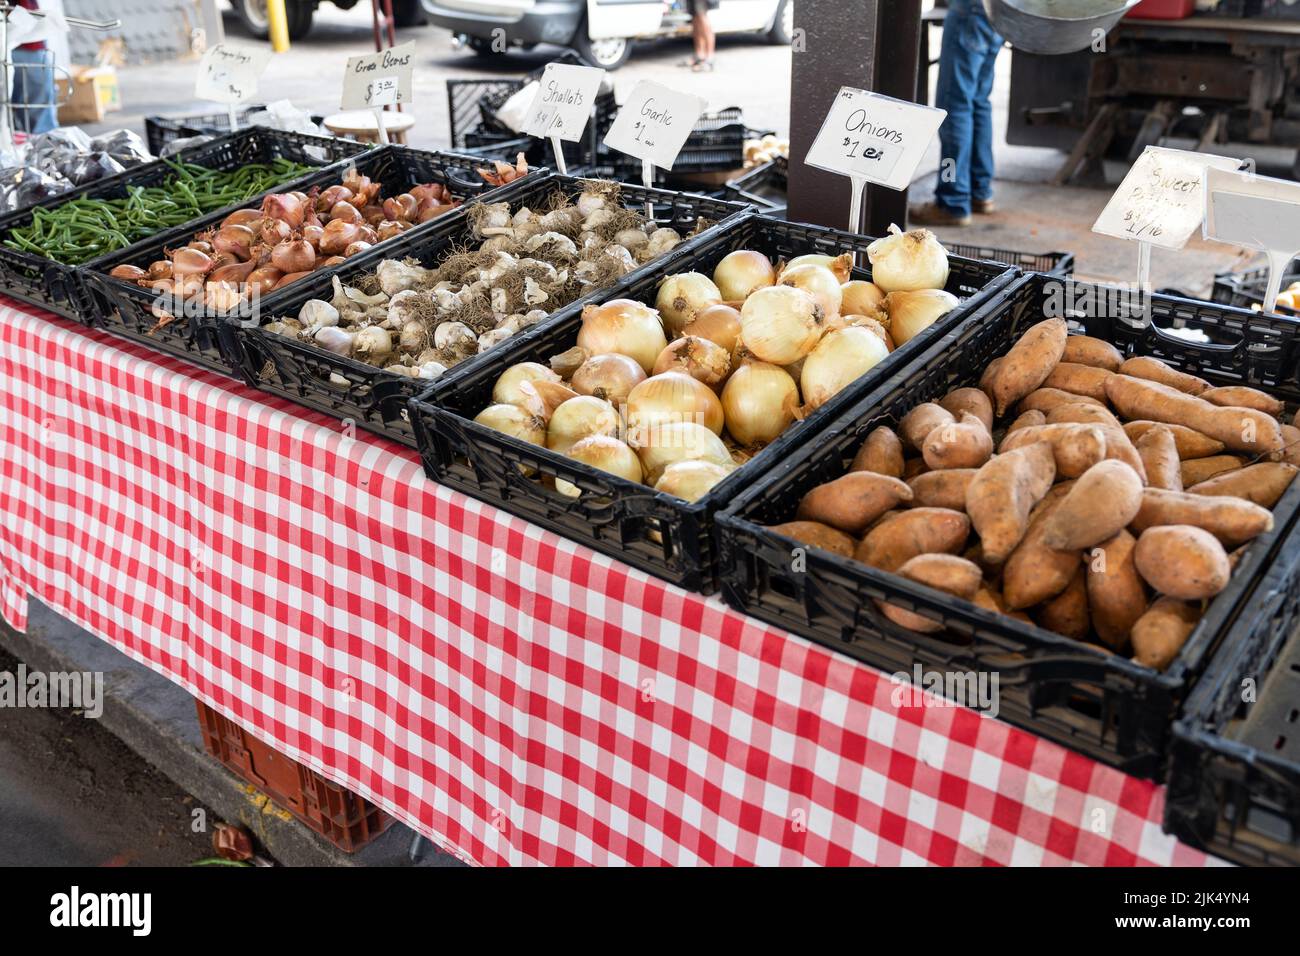 Cebollas, ajos, chalotas, batata y judías verdes en el mercado de un agricultor Foto de stock